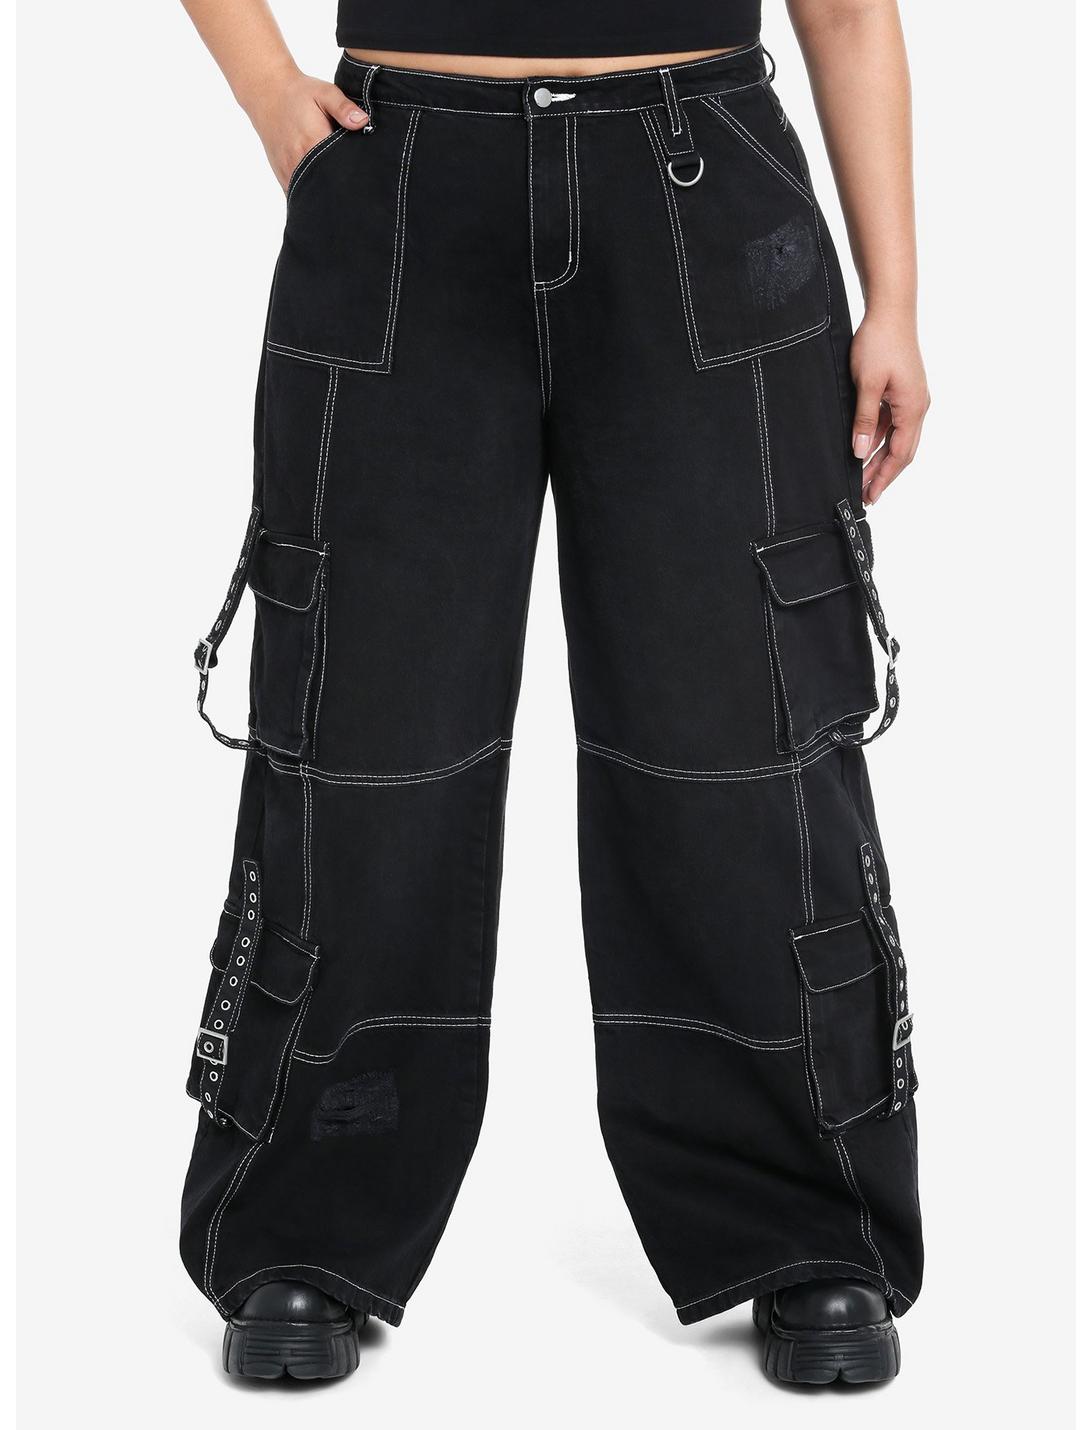 Black & White Contrast Stitch Destructed Carpenter Pants Plus Size ...